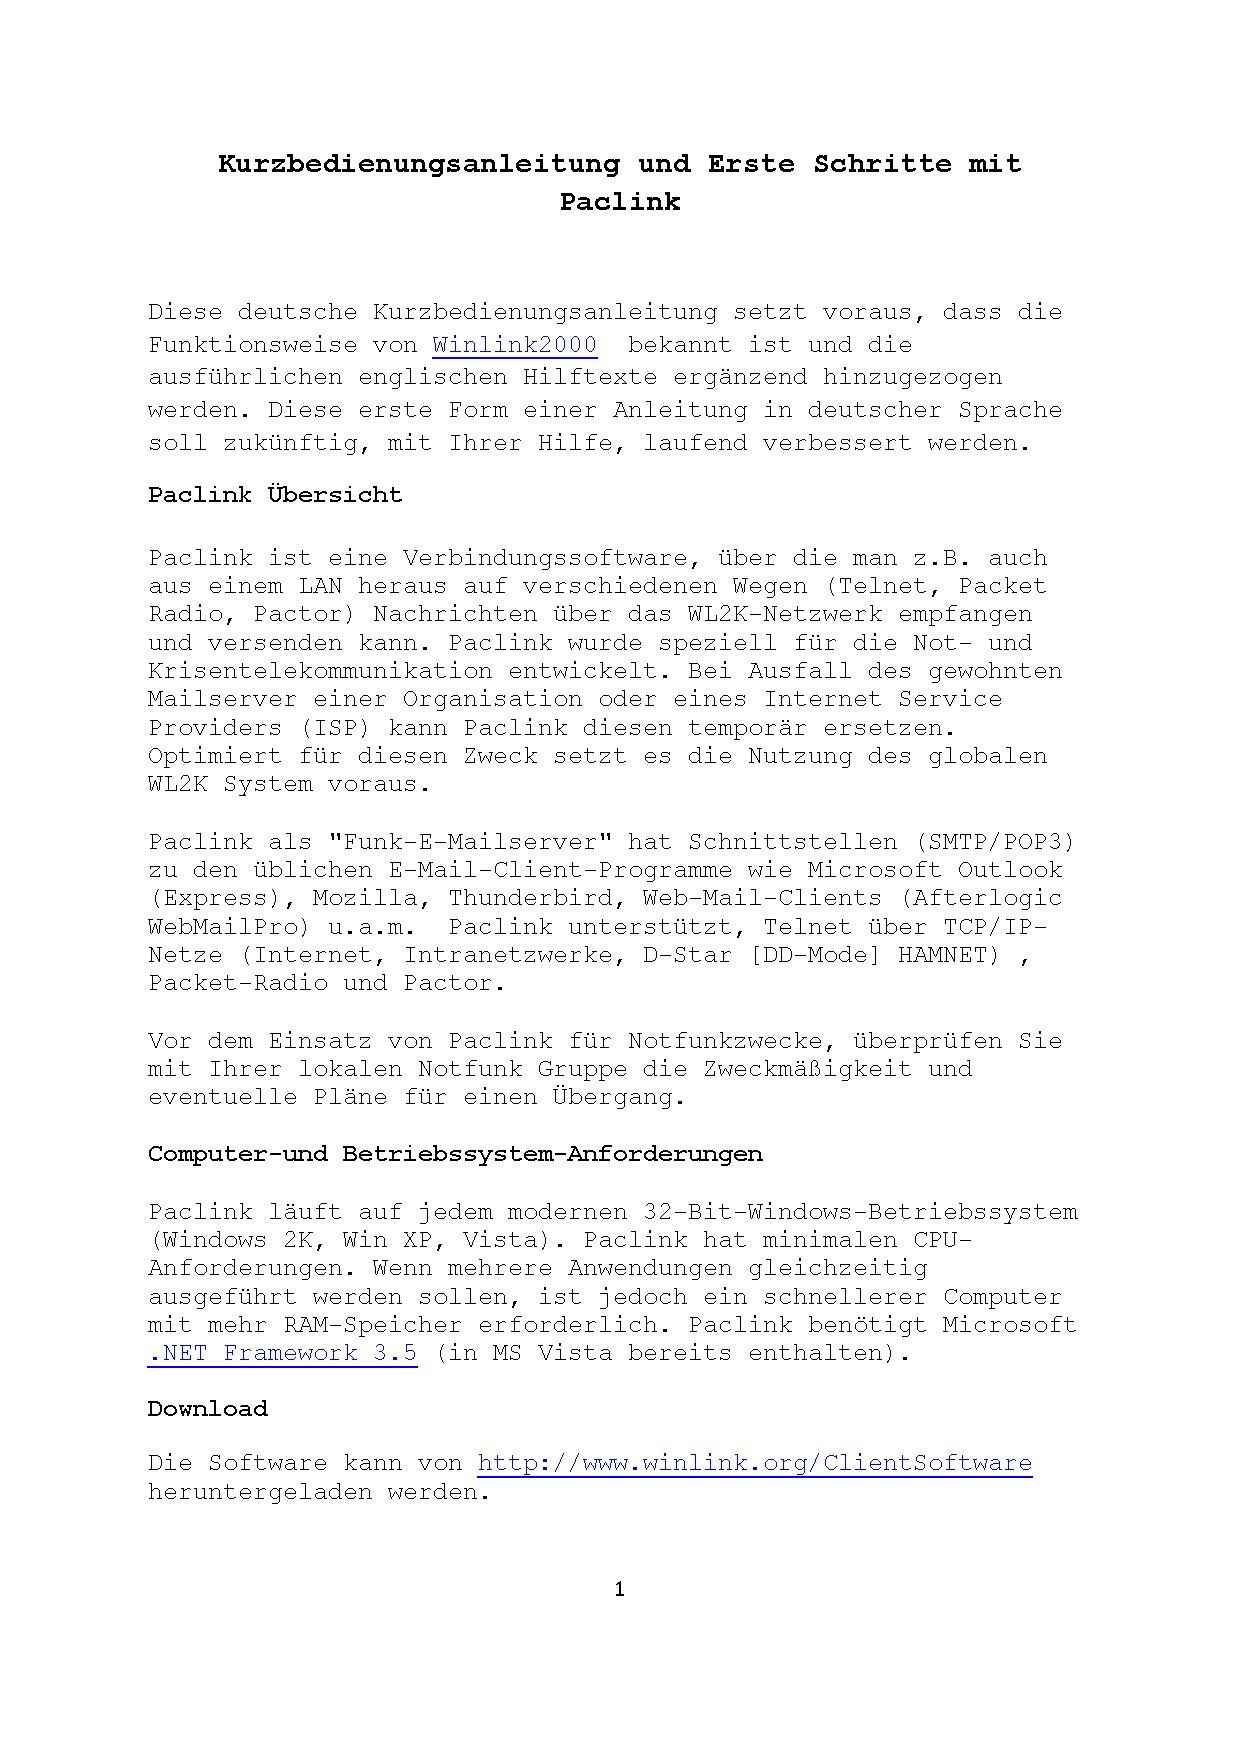 Paclink (Deutsch).pdf